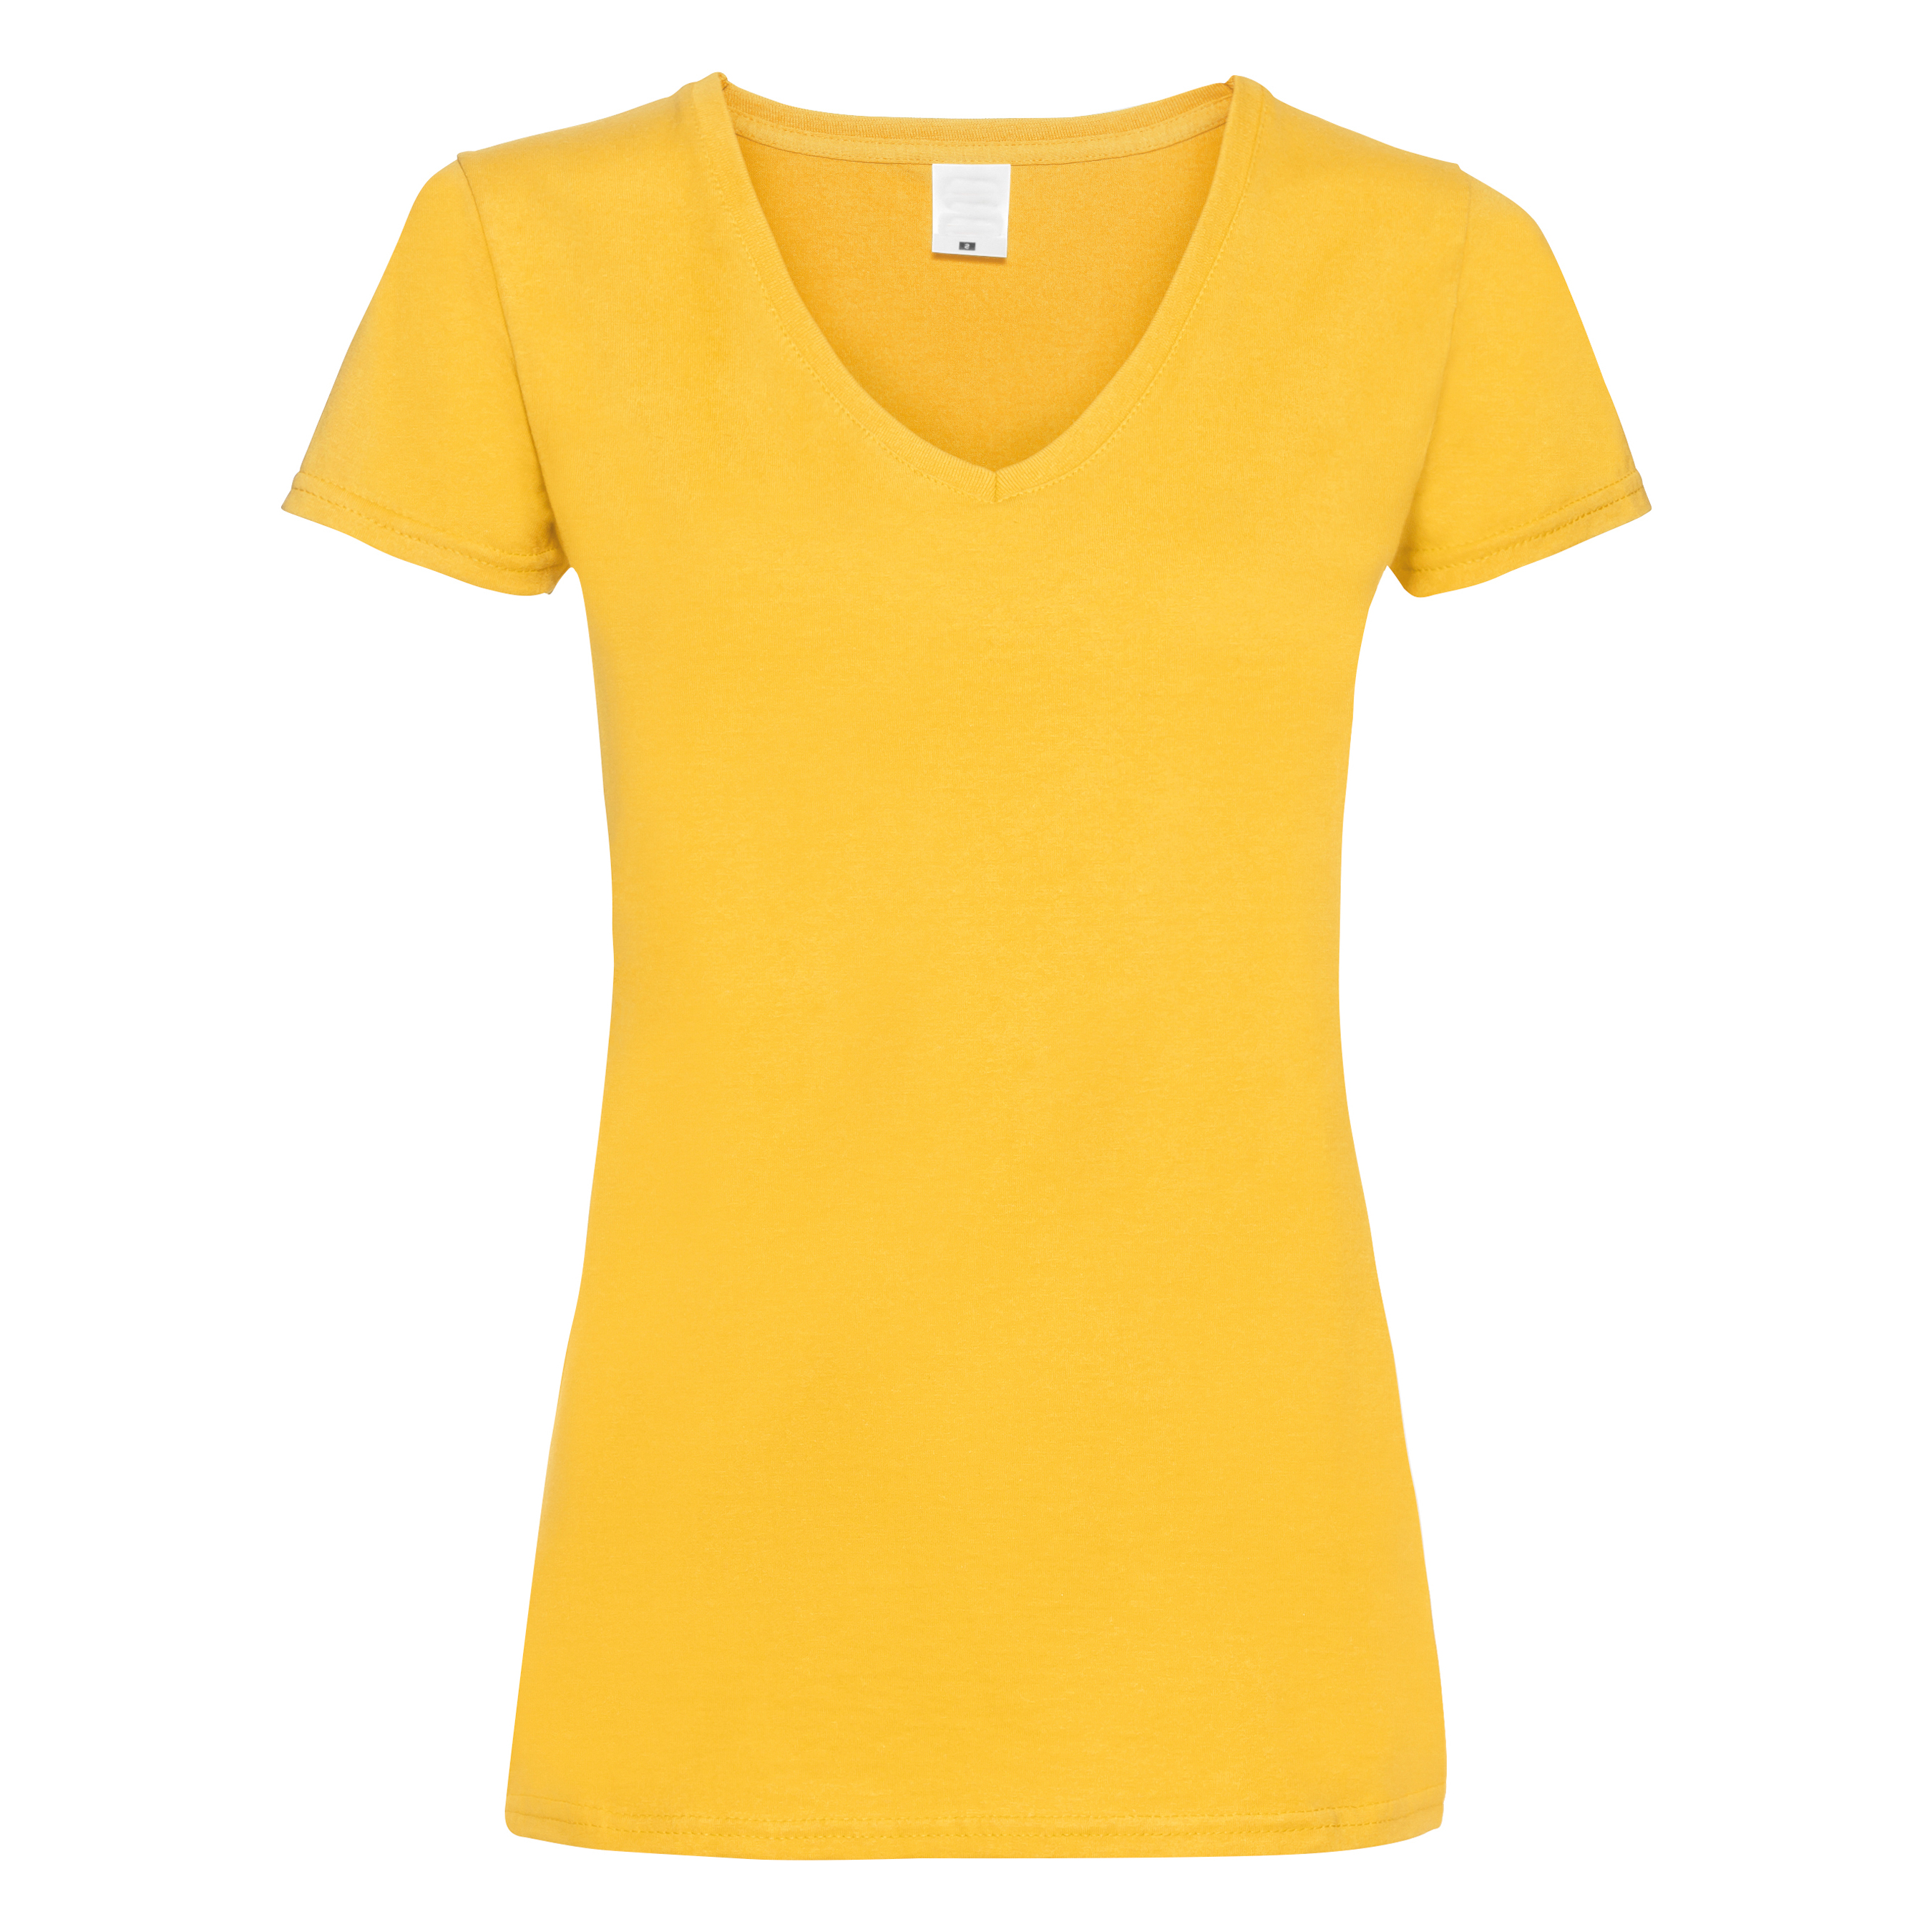 Camiseta Entallada De Manga Corta Y Cuello En V Universal Textiles - dorado - 